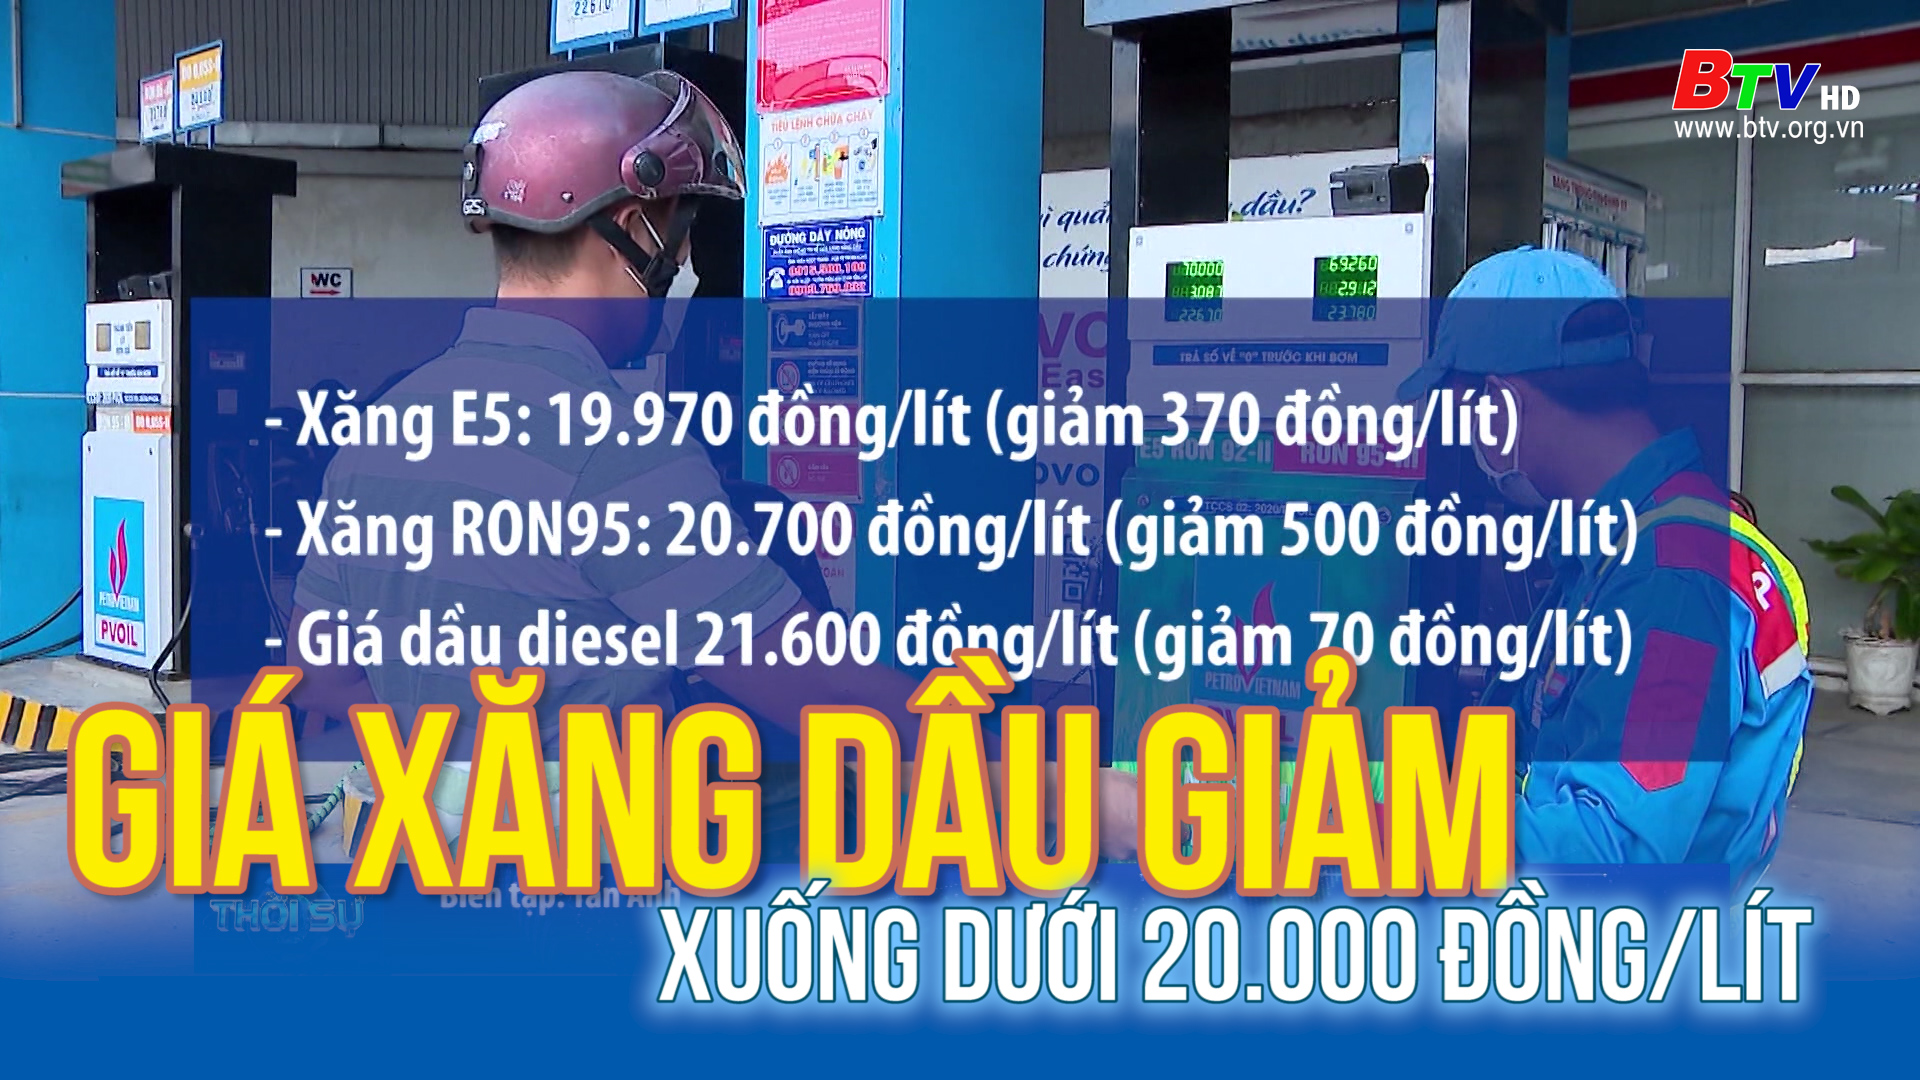 Giá xăng dầu giảm xuống dưới 20.000 đồng/lít 